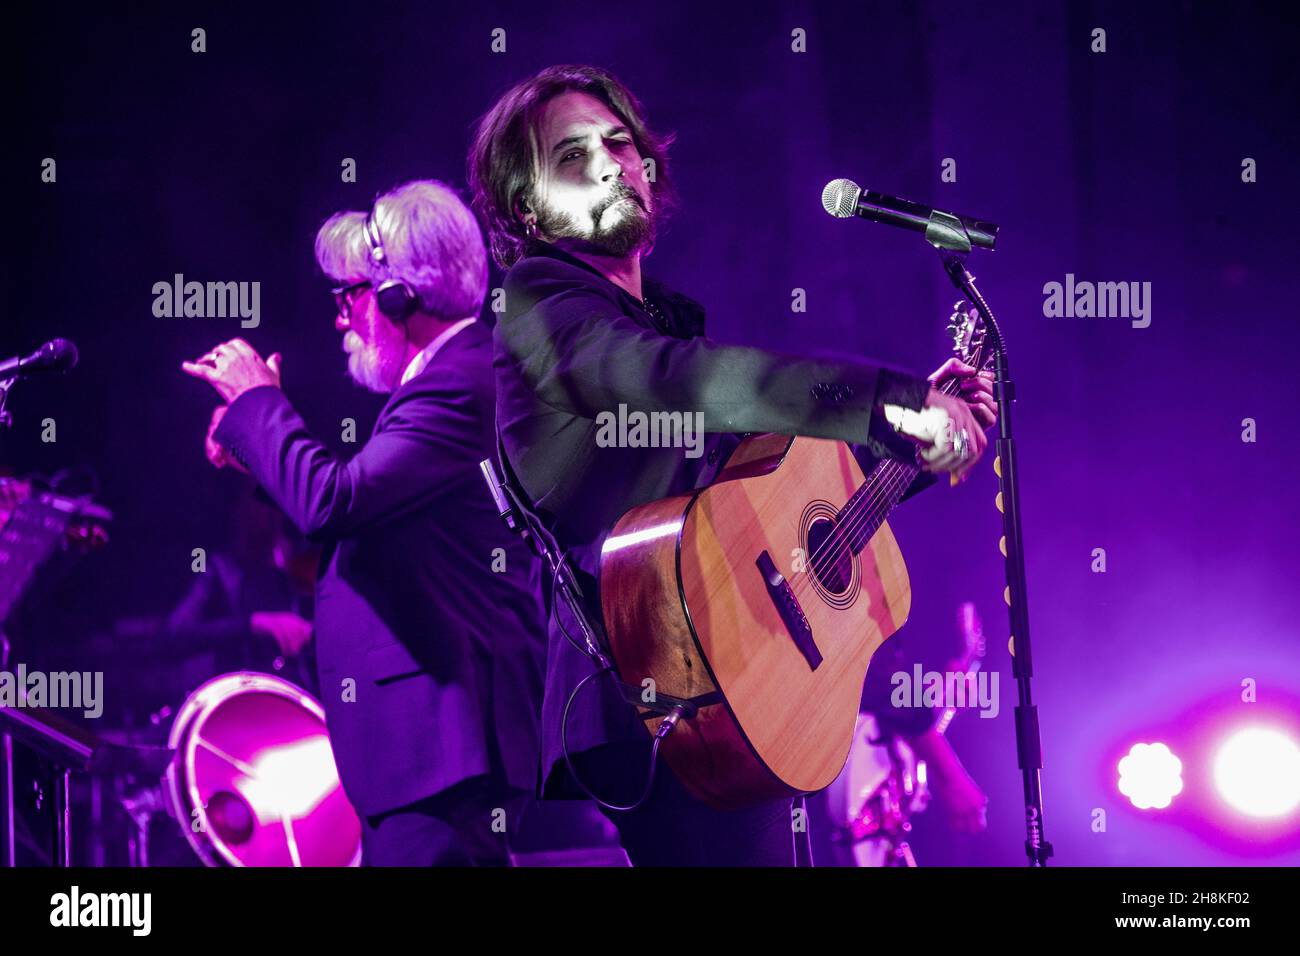 Mailand Italien 30. november 2021 Le Vibrazioni live im Teatro Nazionale © Roberto Finizio / Alamy Stockfoto